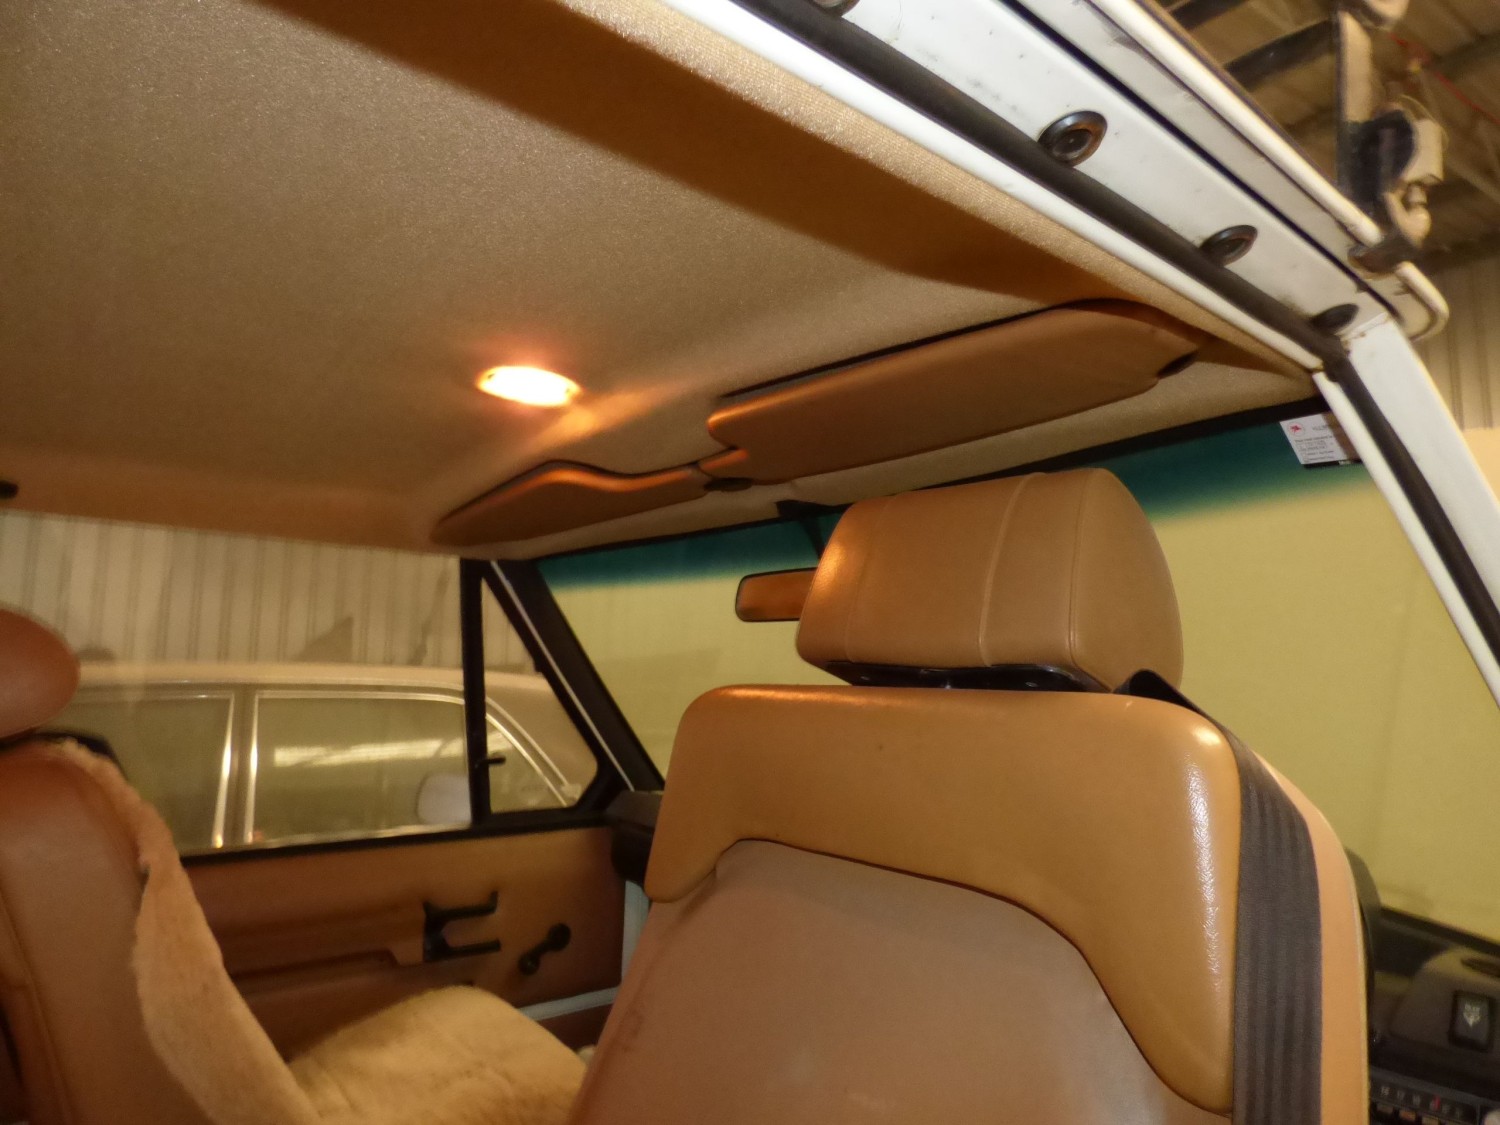 1977 Range Rover 2 Door Classic